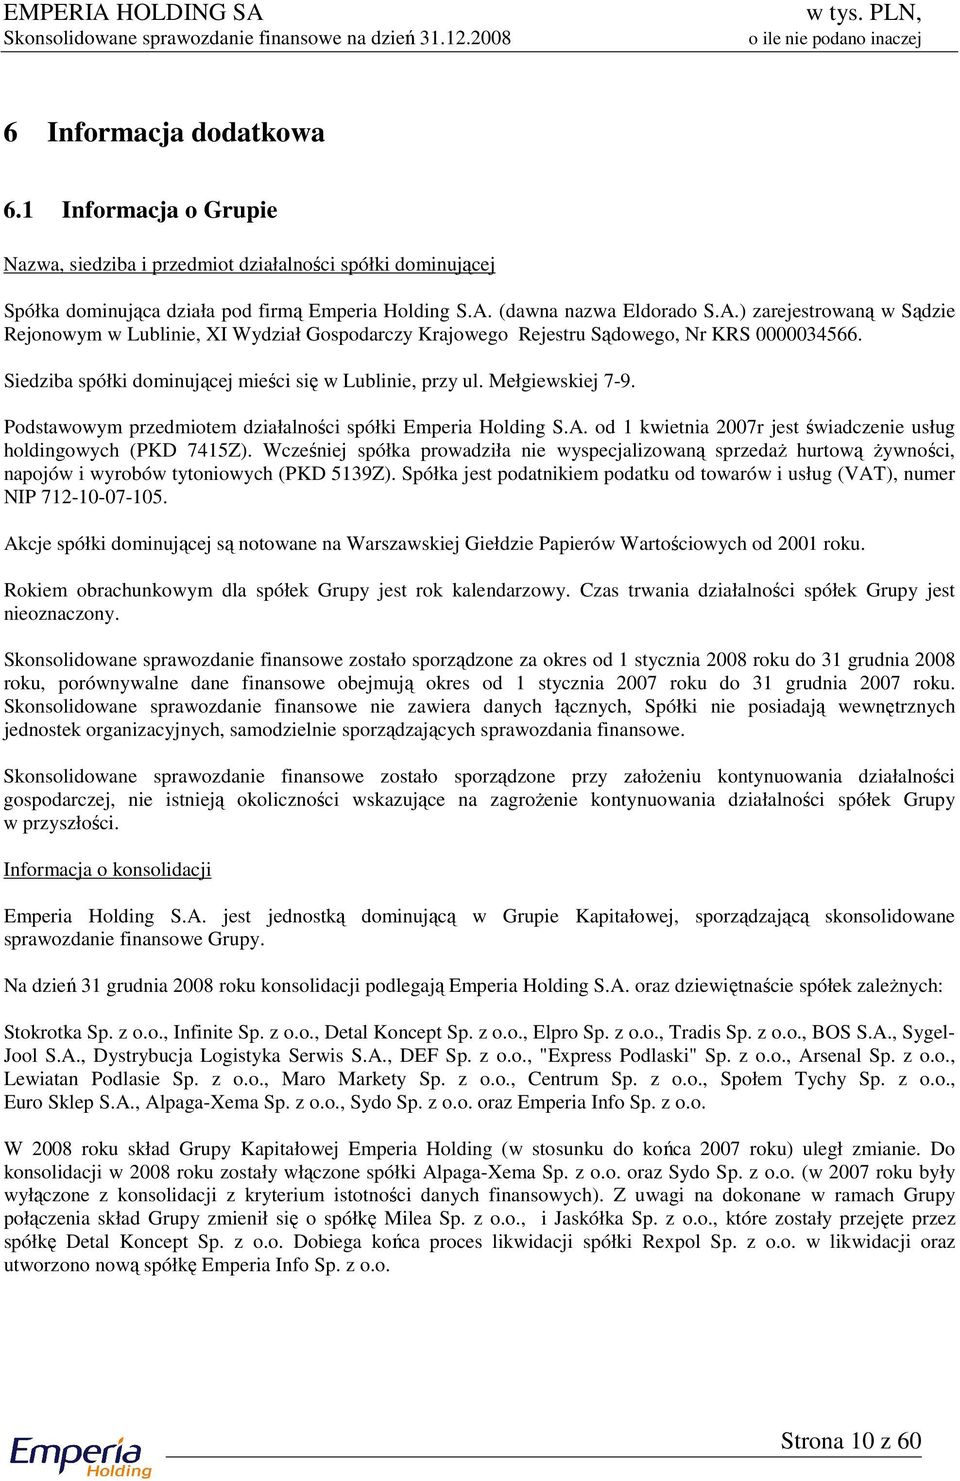 Podstawowym przedmiotem działalności spółki Emperia Holding S.A. od 1 kwietnia 2007r jest świadczenie usług holdingowych (PKD 7415Z).